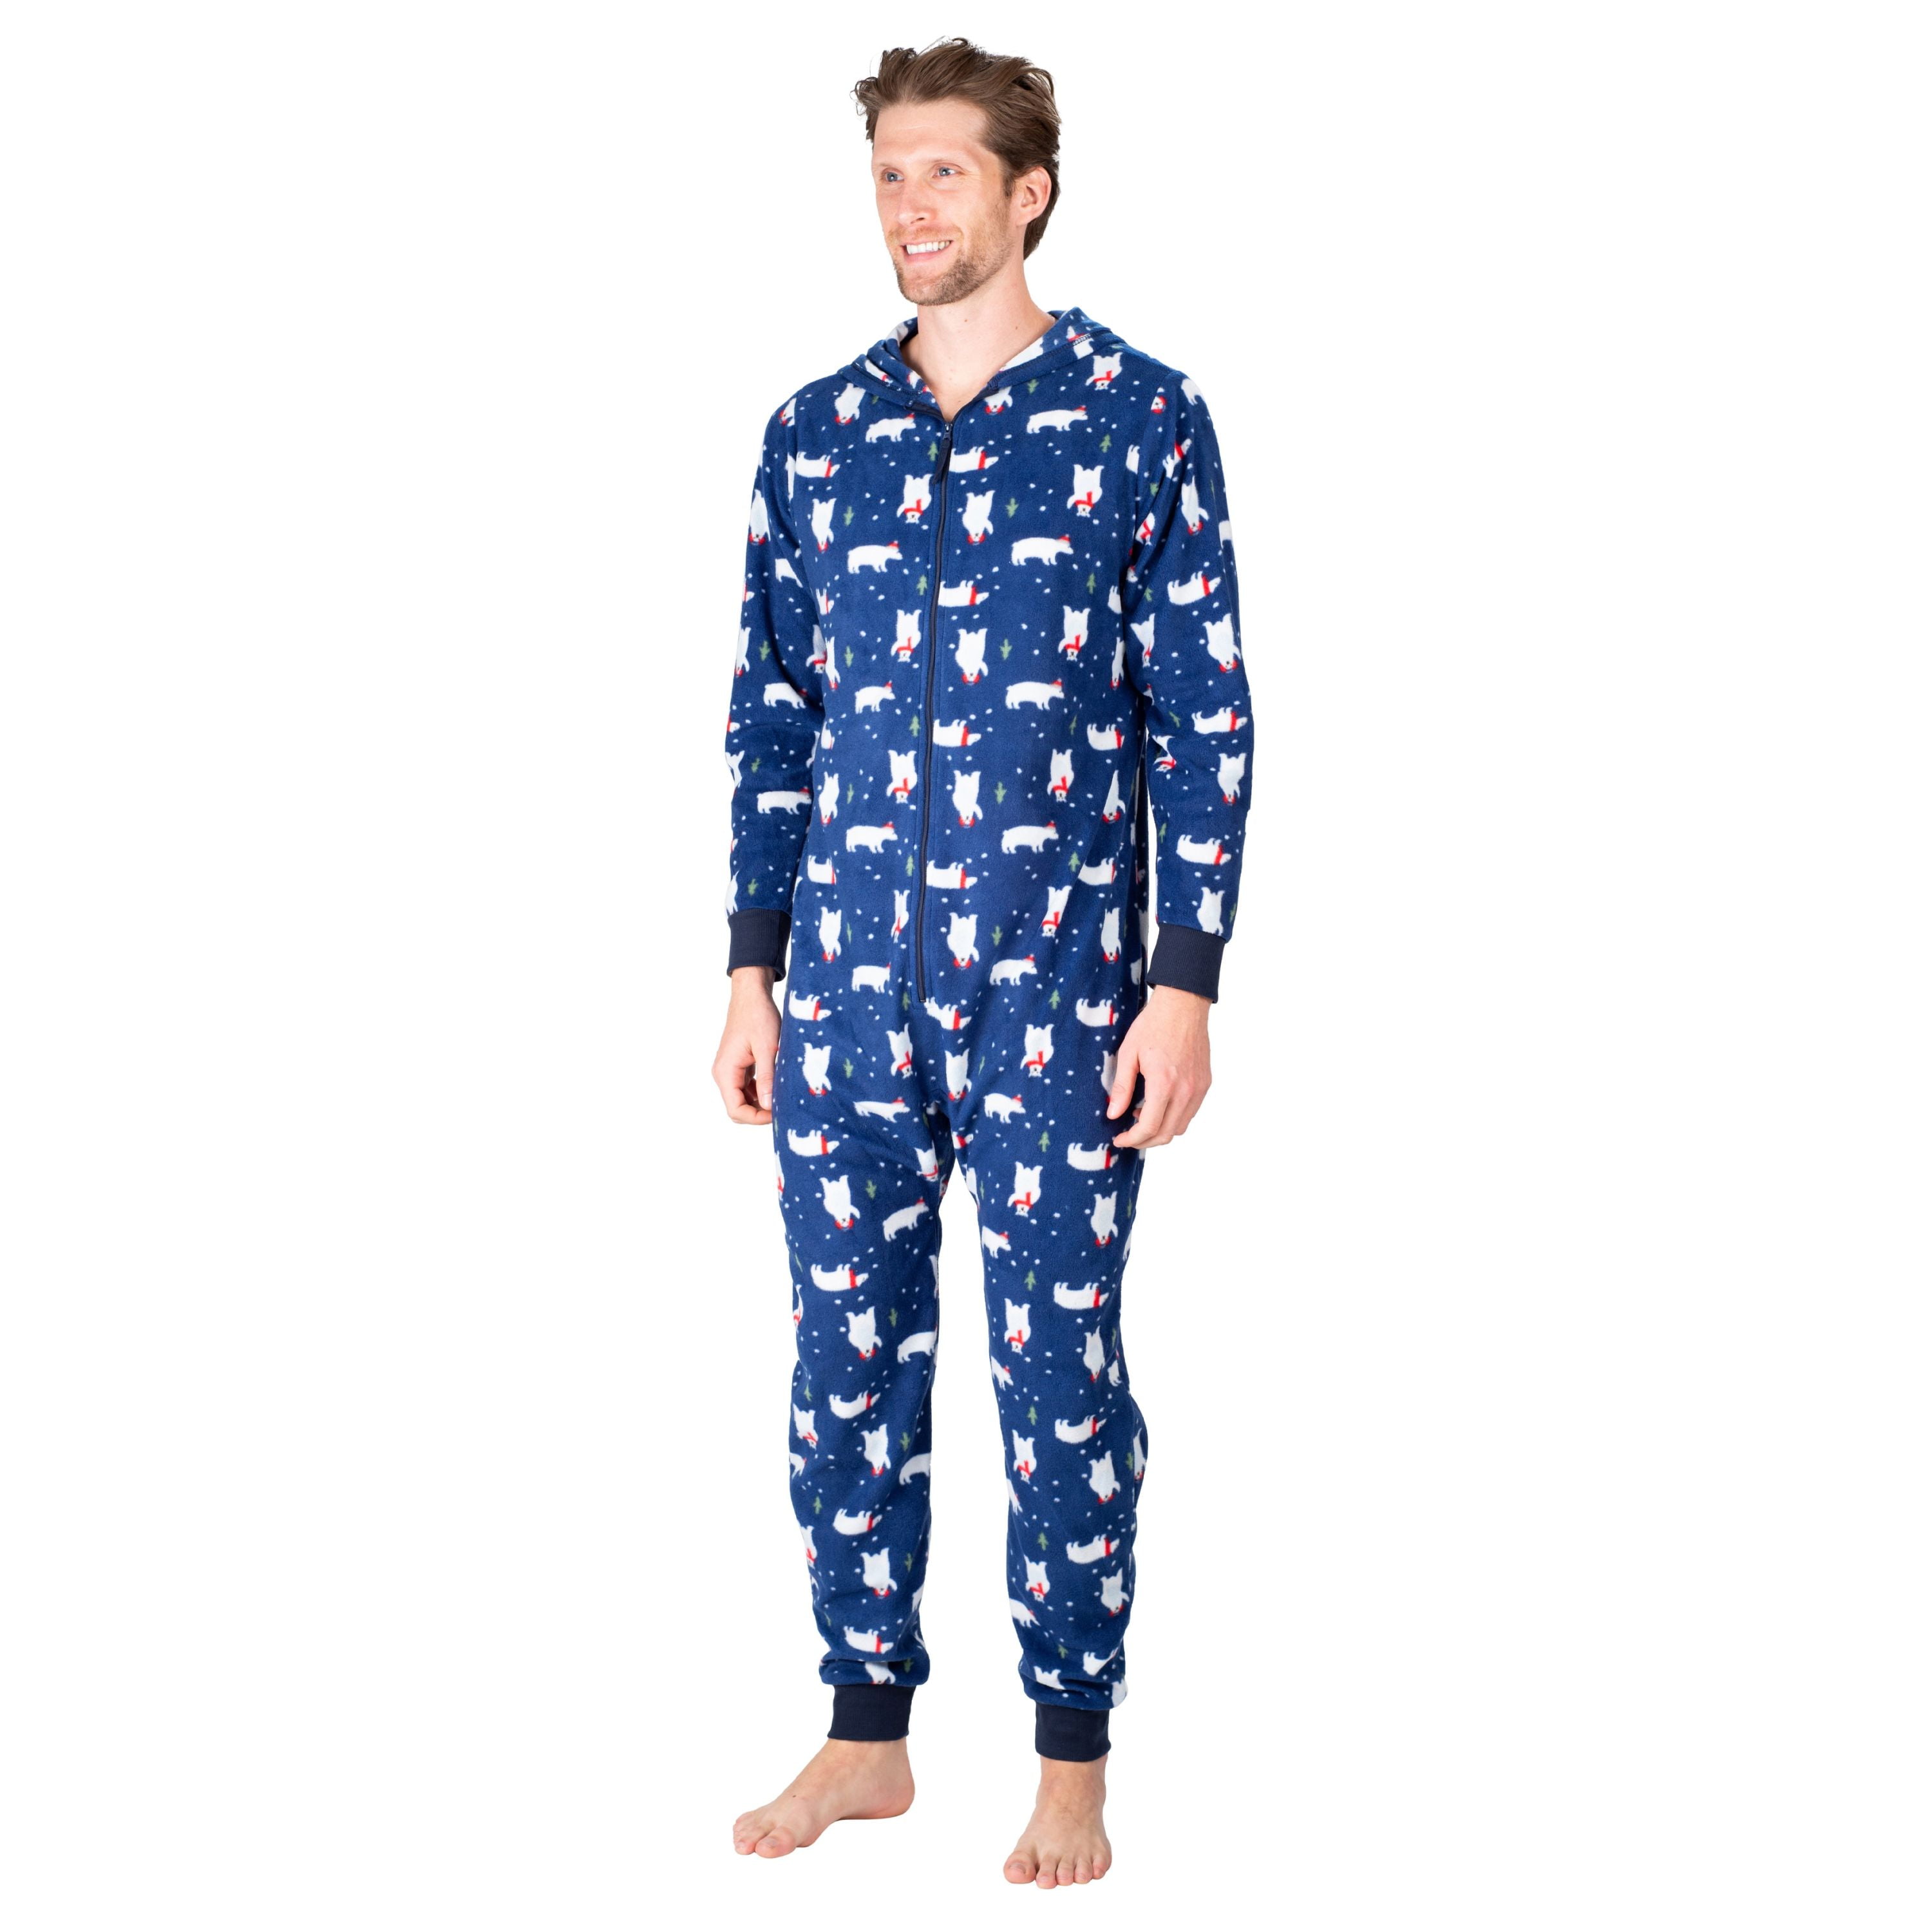 SLEEPHERO Adult Onesie Men Cozy Novelty Onesie Christmas Mens Onesie Holiday Adult Onsie Adult Pyjamas For Men